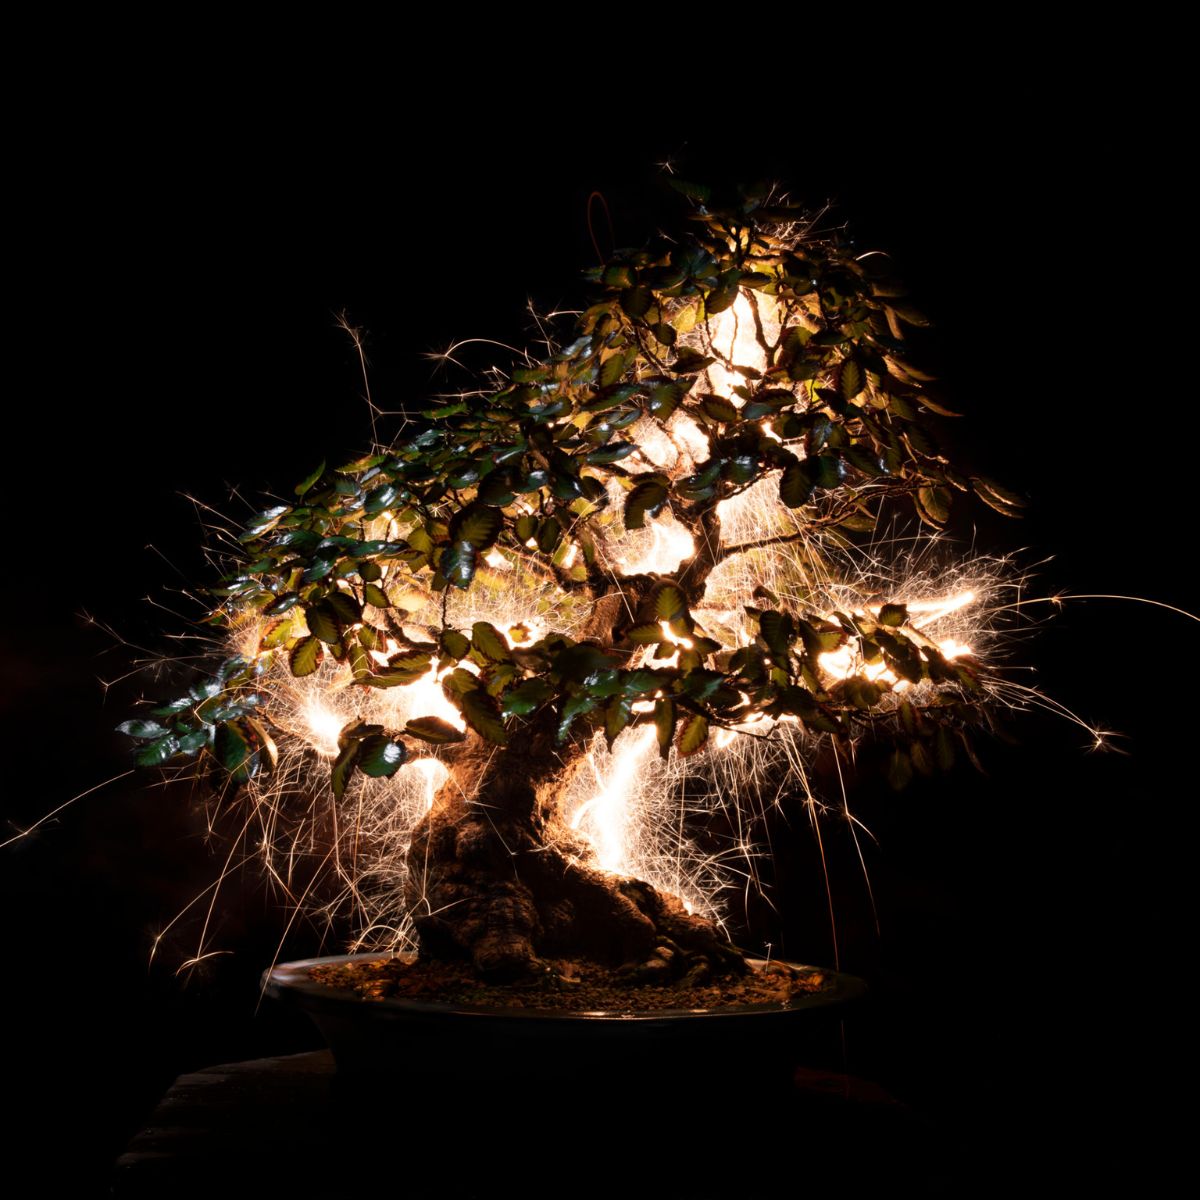 Illuminated bonsai tree sculptures by Vitor Schietti on Thursd